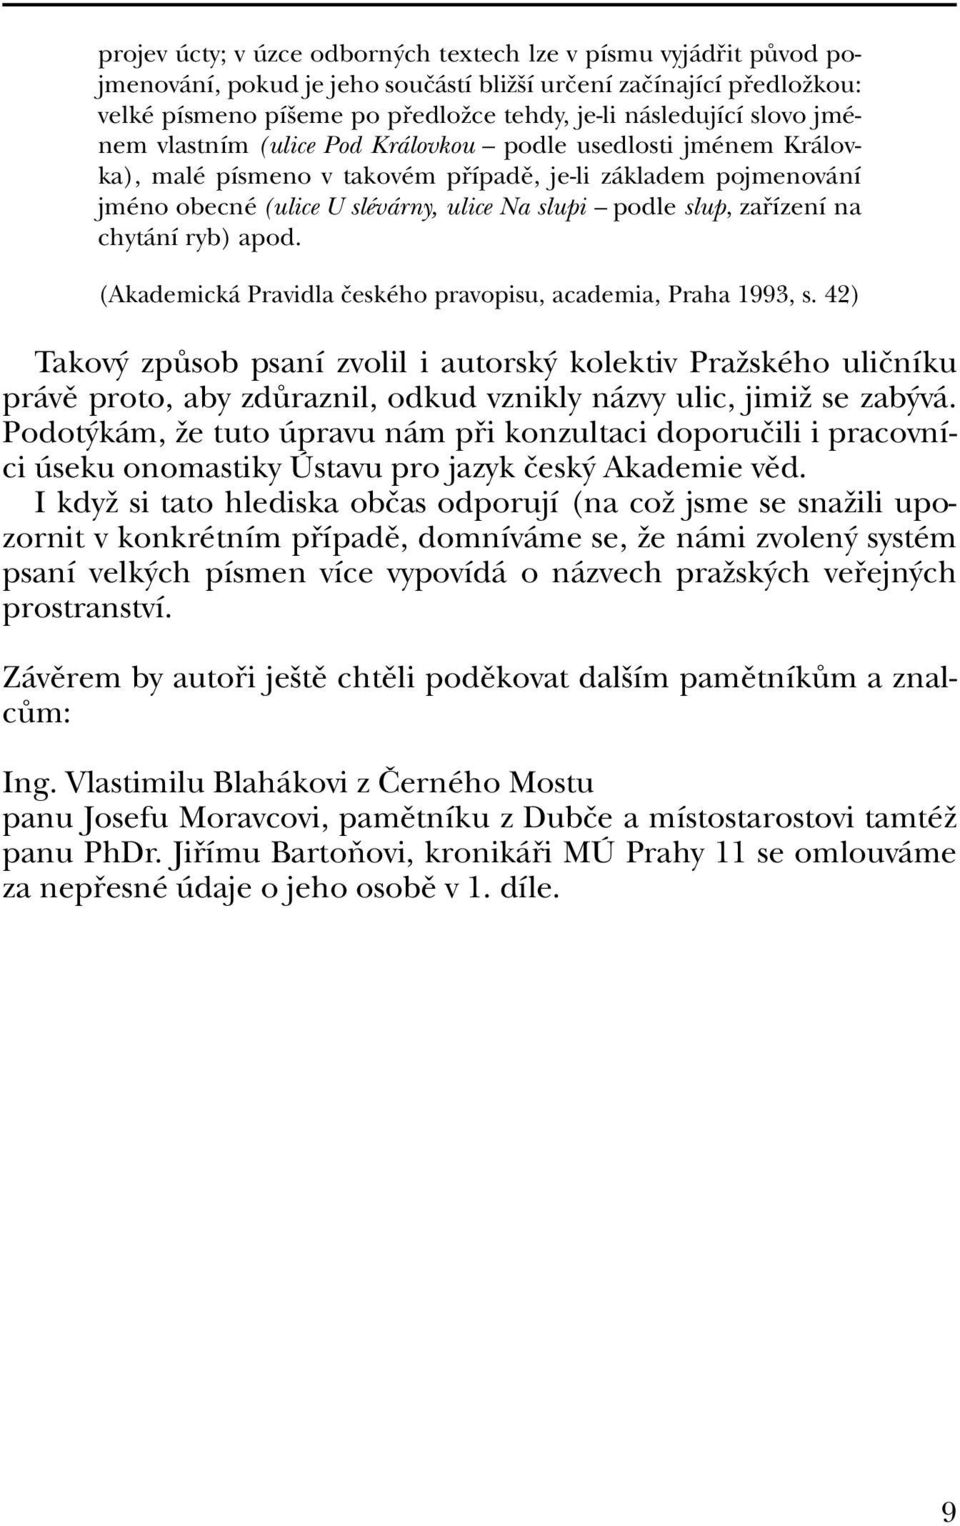 zafiízení na chytání ryb) apod. (Akademická Pravidla ãeského pravopisu, academia, Praha 1993, s.